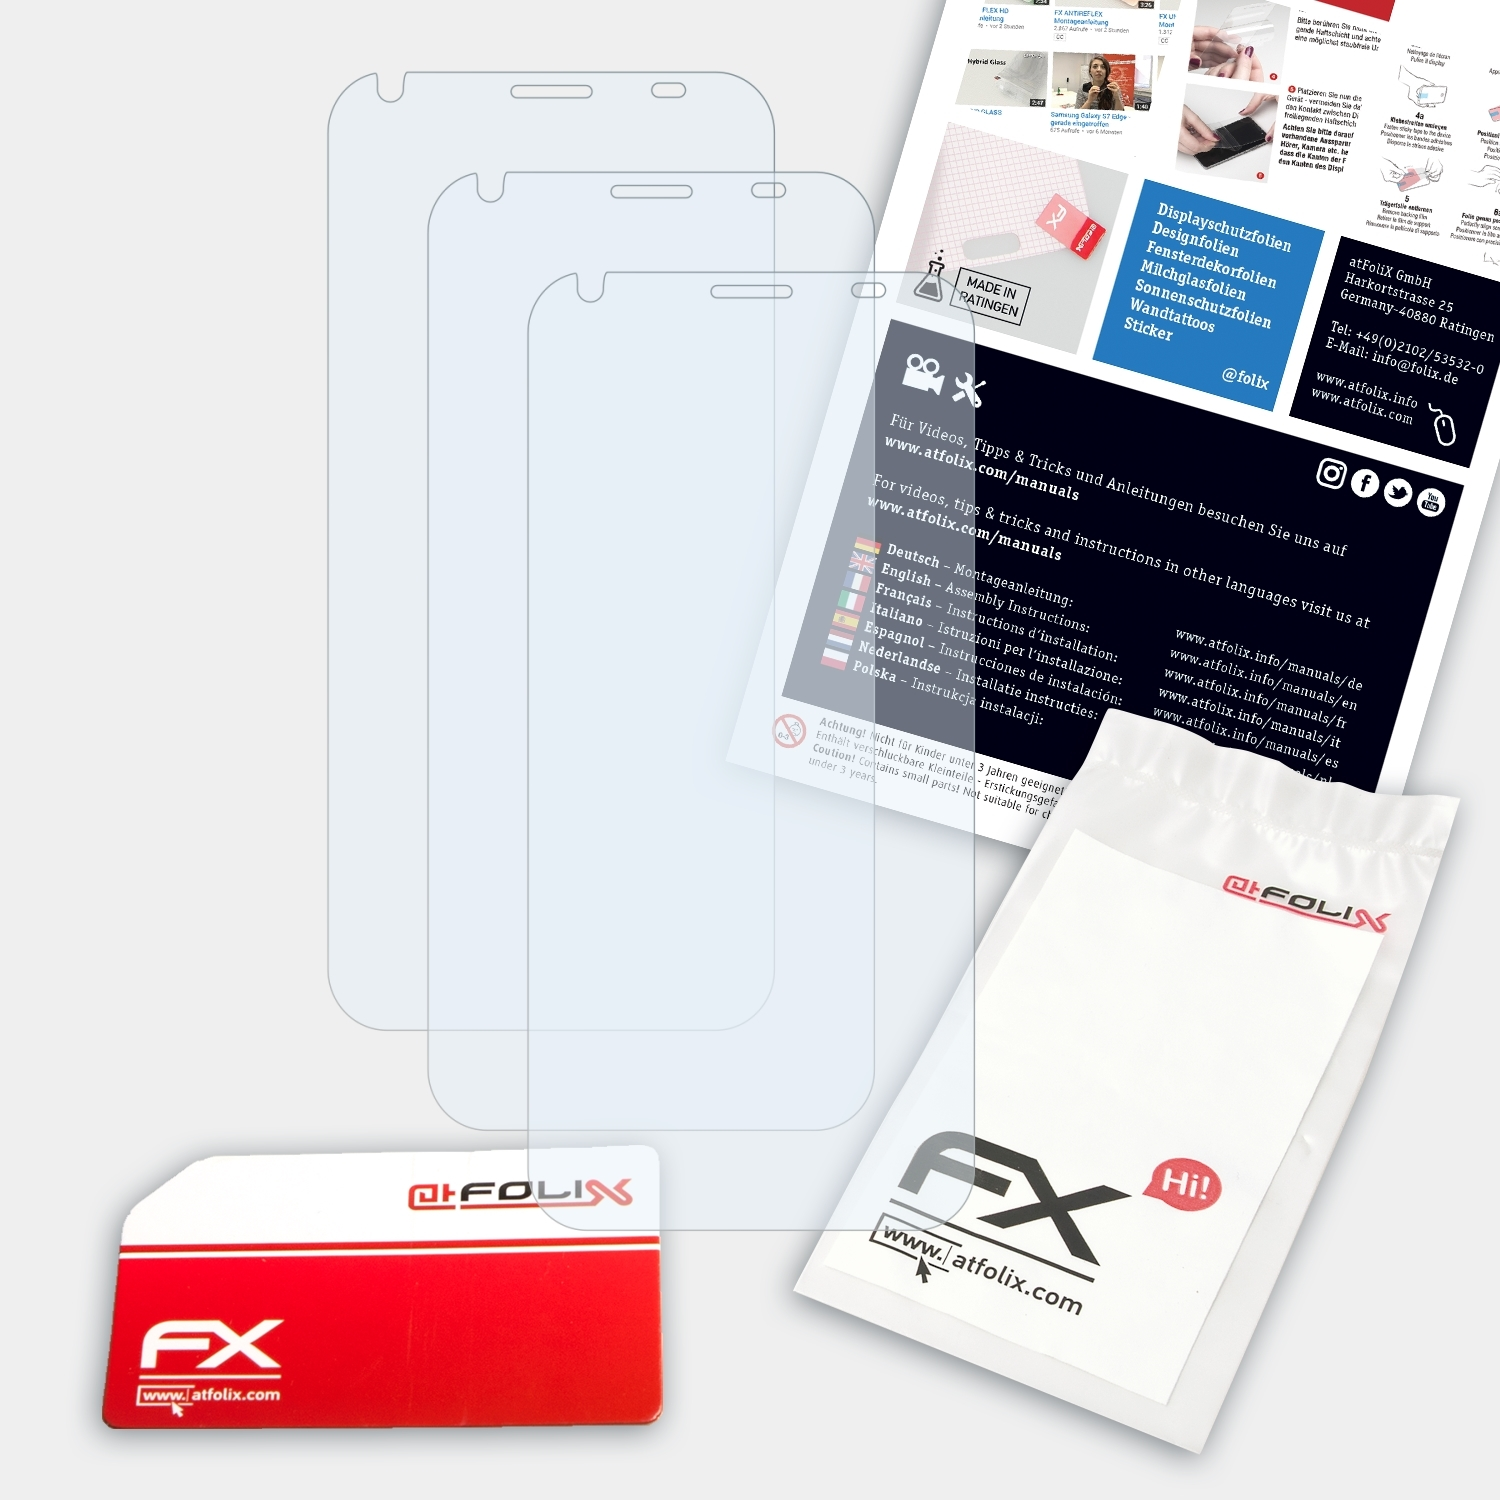 ATFOLIX 3x Z6) Displayschutz(für Liquid Acer FX-Clear